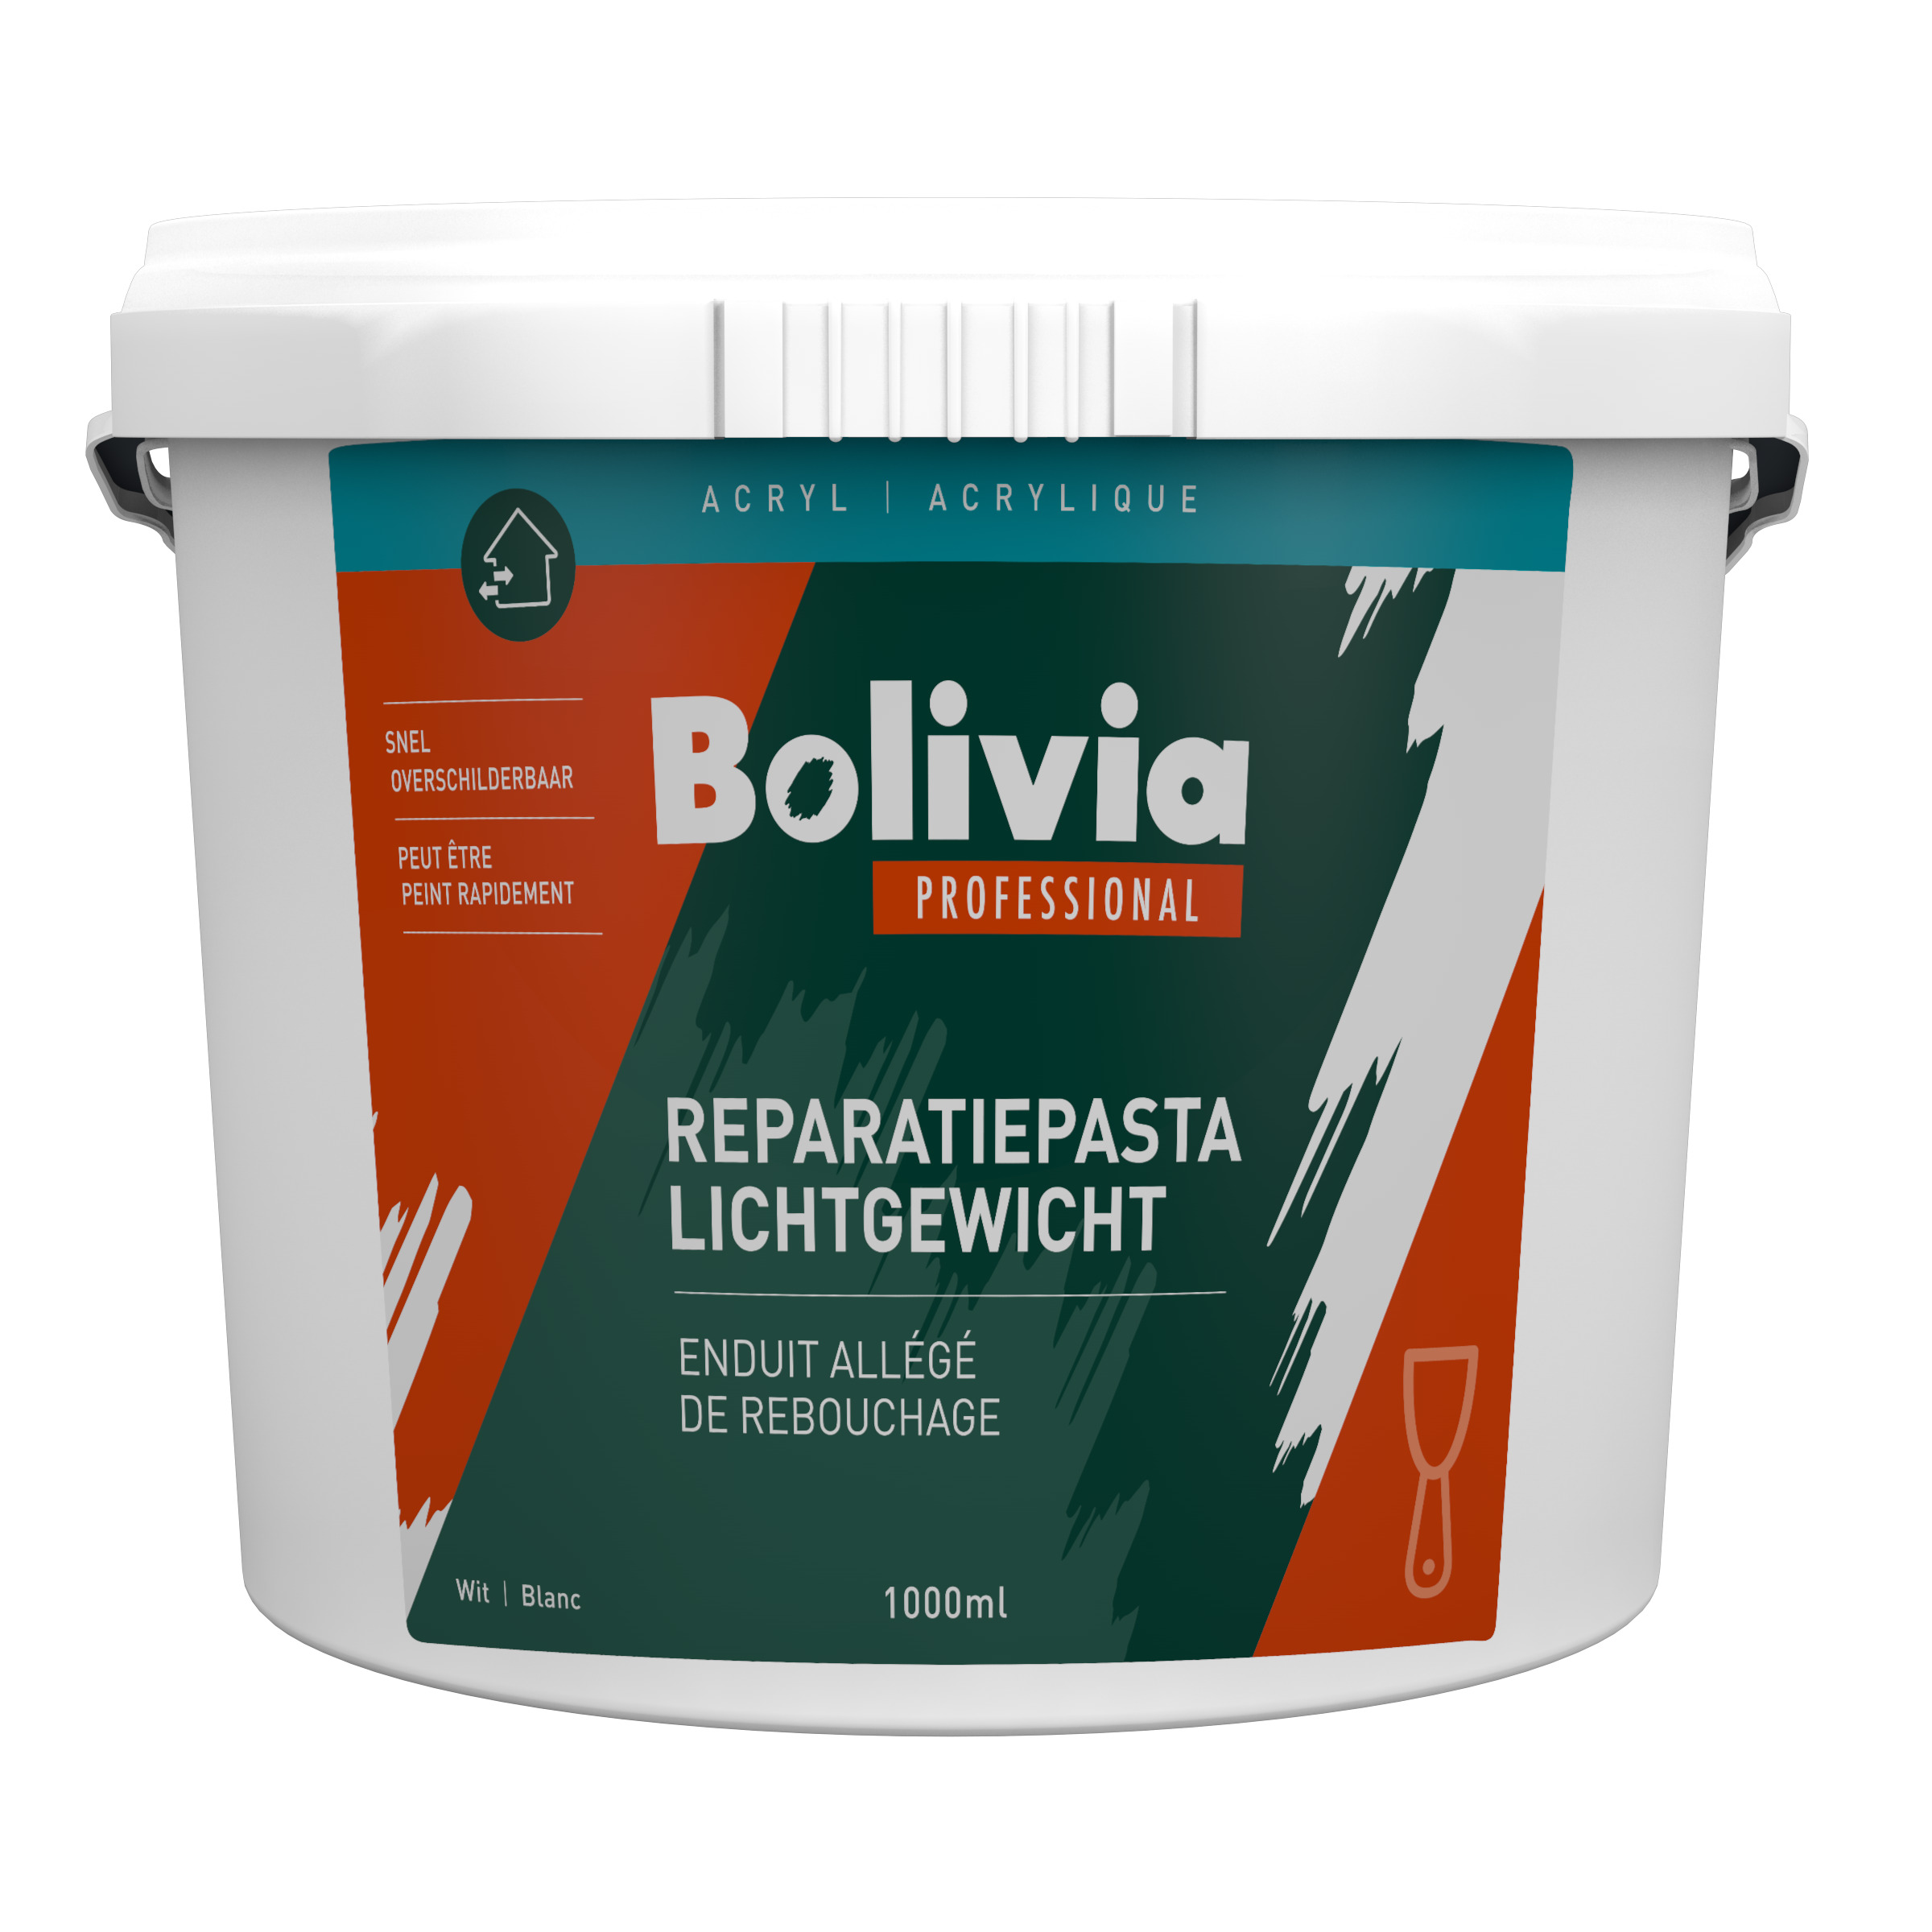 Bolivia reparatiepasta lichtgewicht